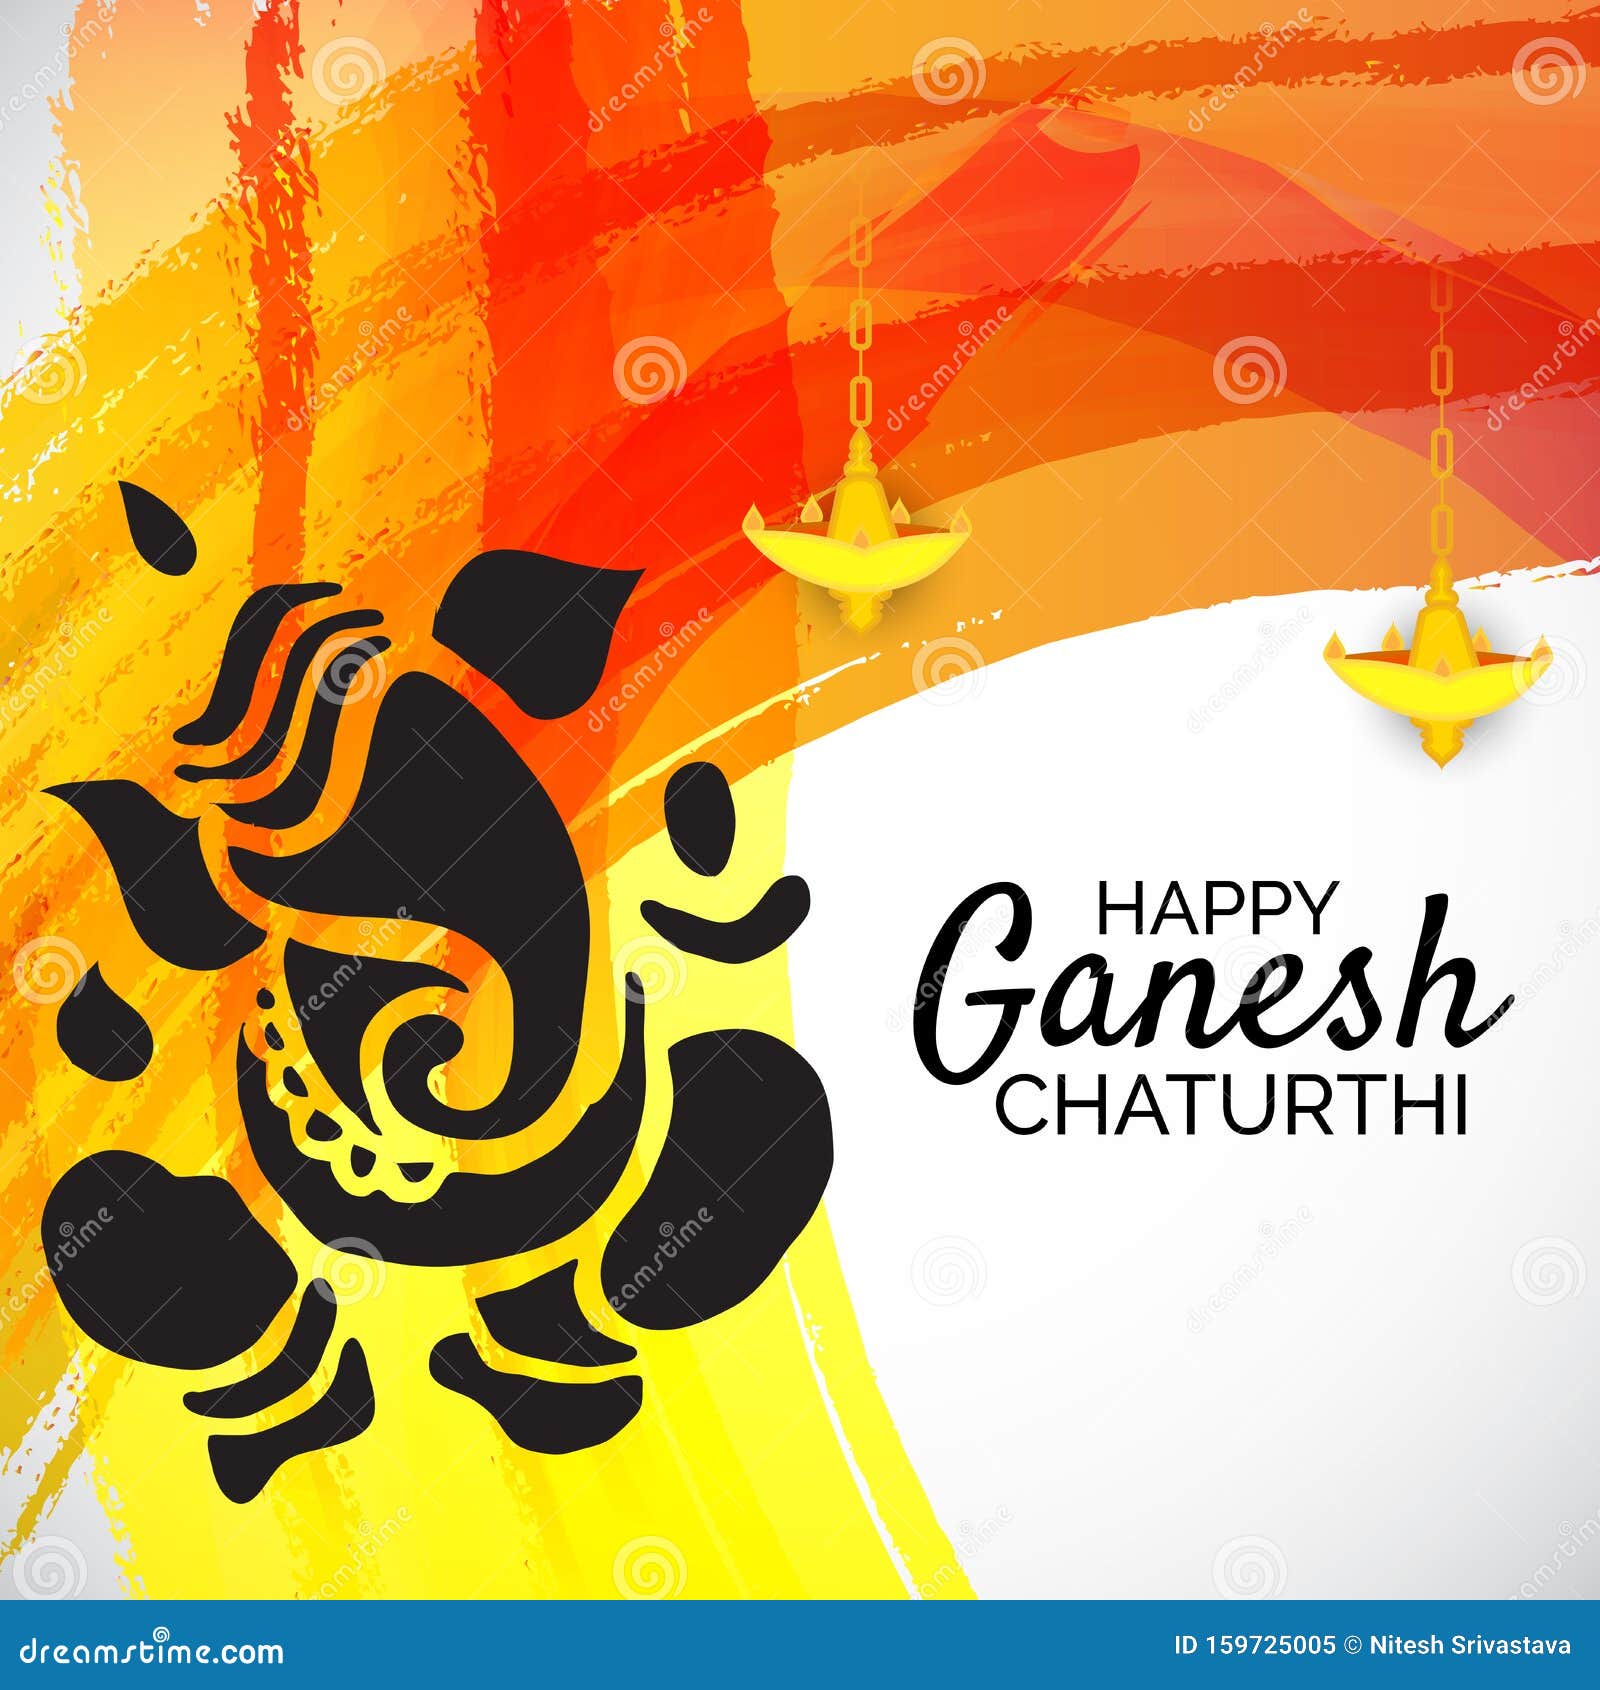 Ganesh Chaturthi stock illustration. Illustration of background - 159725005